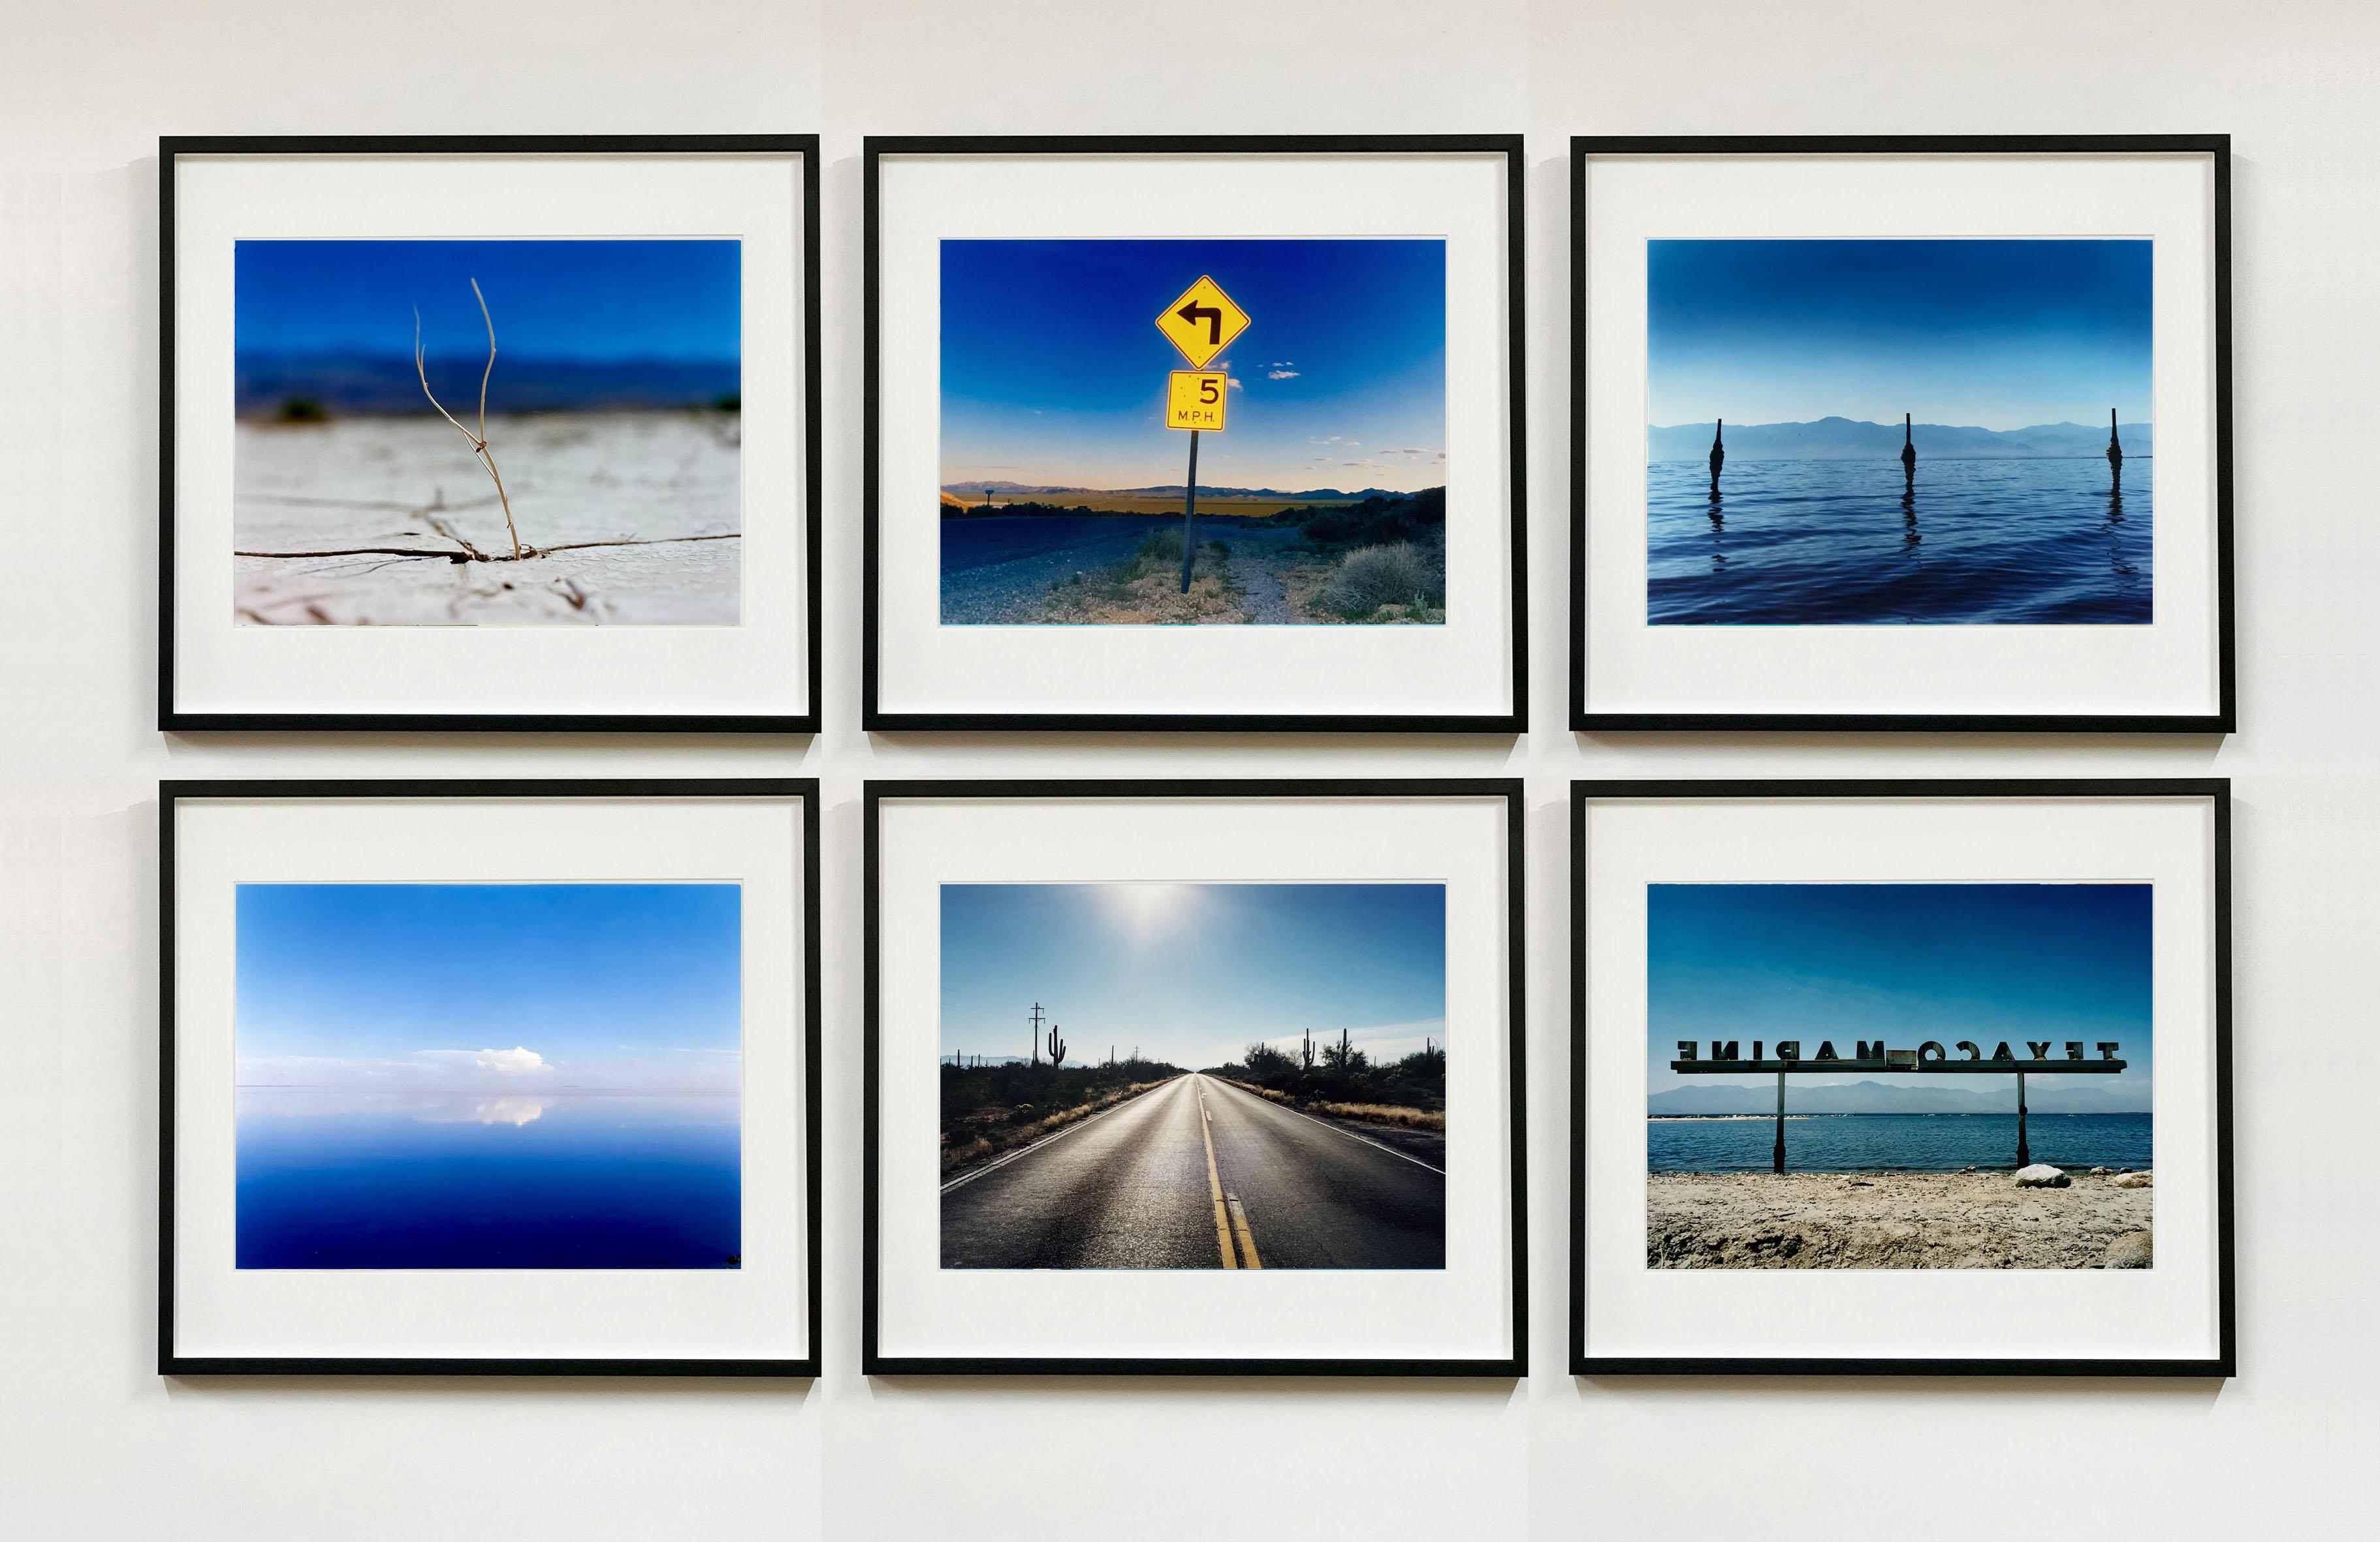 Landscape Photograph Richard Heeps - Six œuvres d'art d'Oasis du désert encadrées - Photographie de paysage américain en couleur